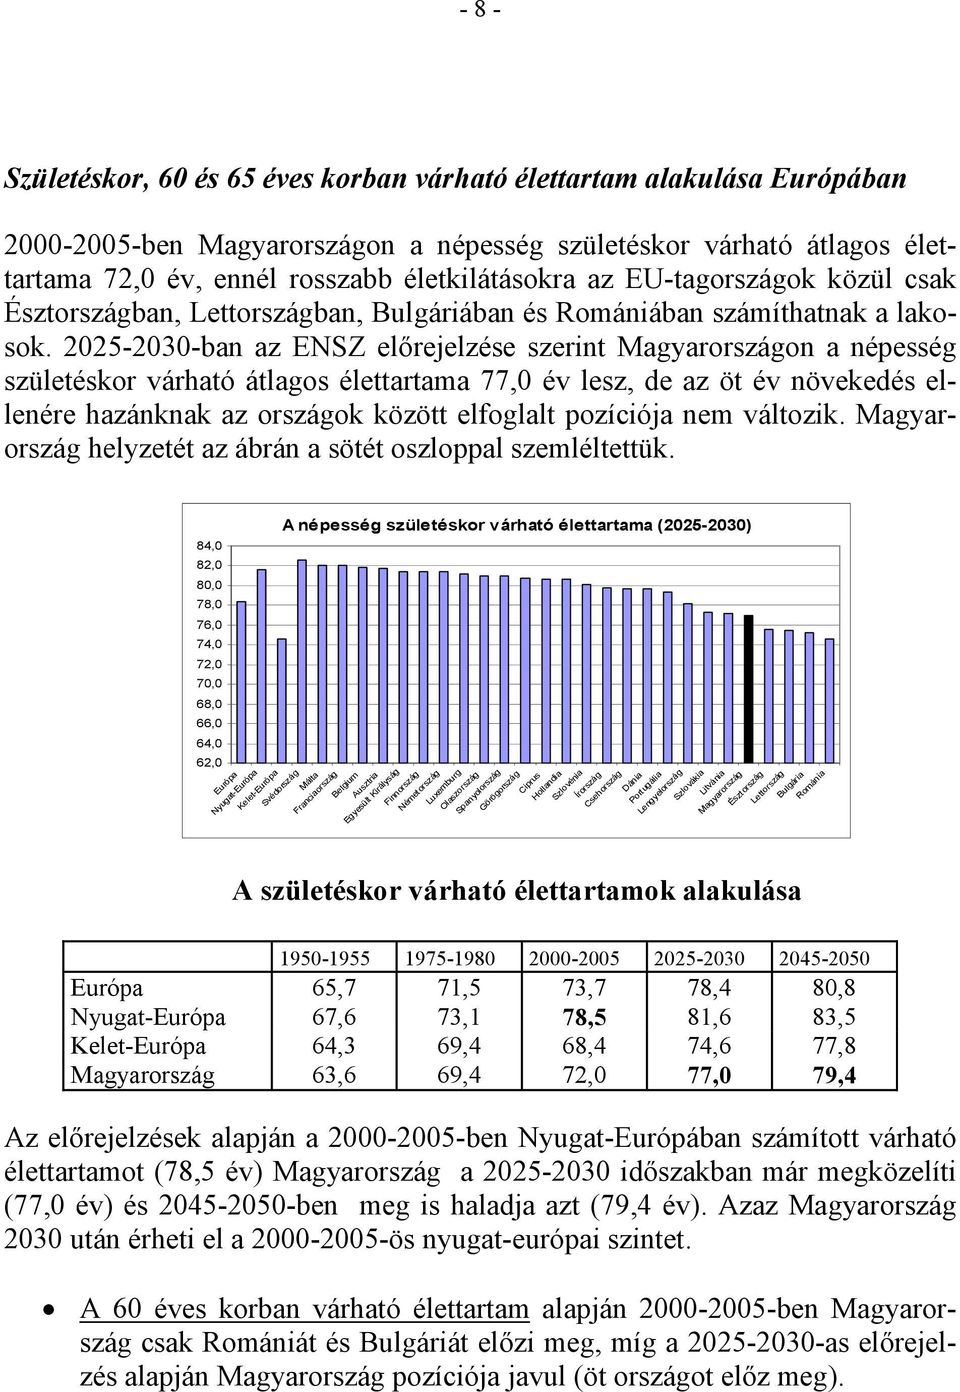 -3-ban az ENSZ elırejelzése szerint Magyarországon a népesség születéskor várható átlagos élettartama 77, év lesz, de az öt év növekedés ellenére hazánknak az országok között elfoglalt pozíciója nem